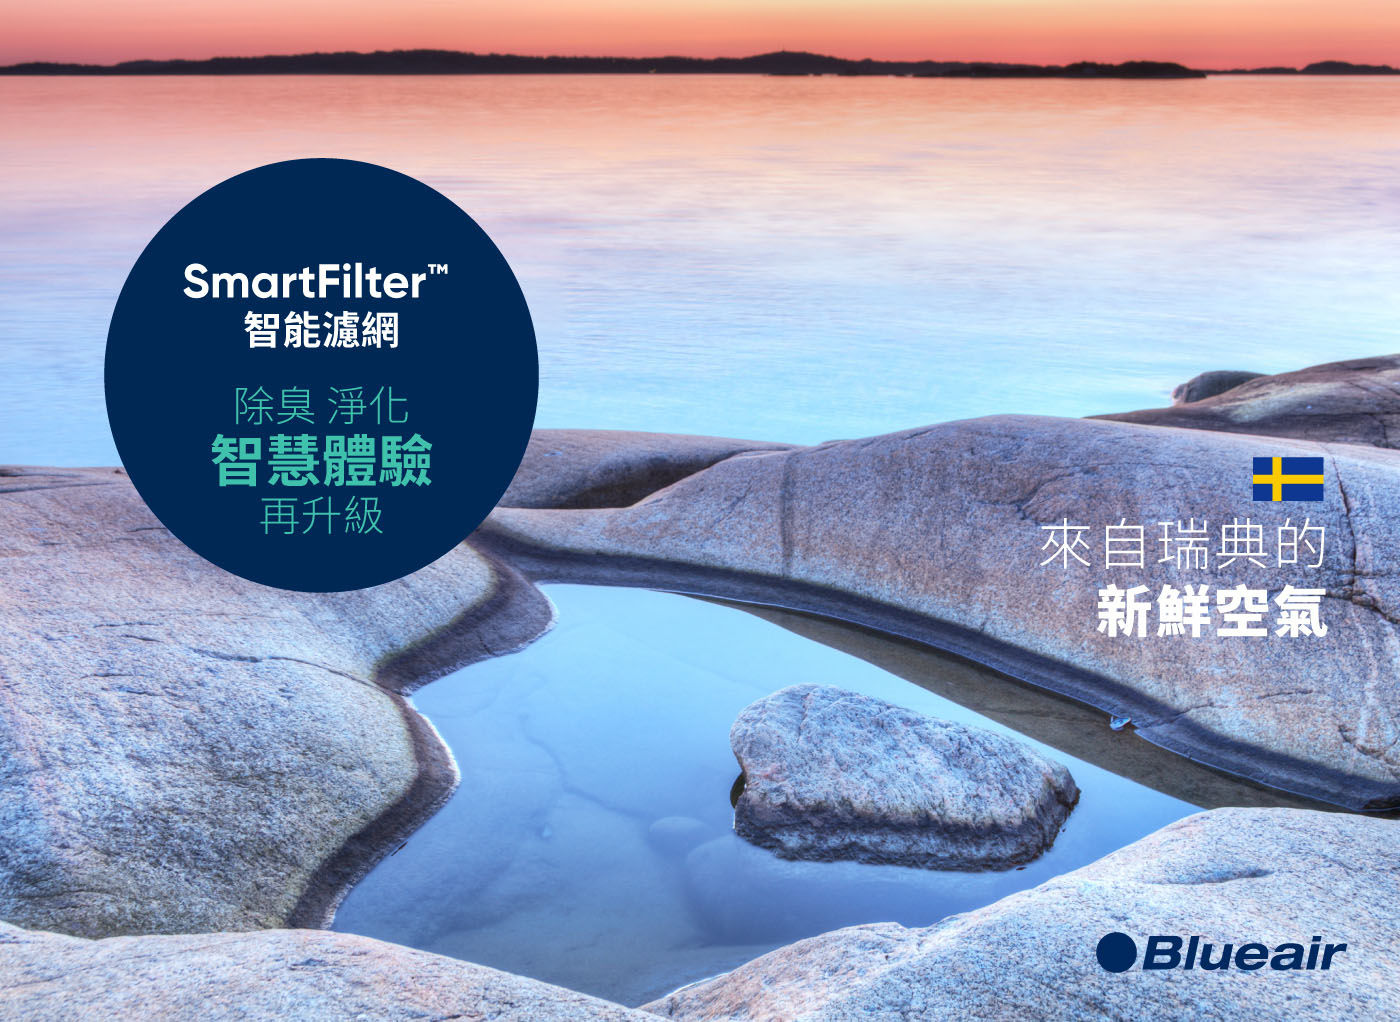 Blueair SmartFilter 7500系列專用智能濾網除臭淨化智慧體驗來自瑞典的新鮮空氣